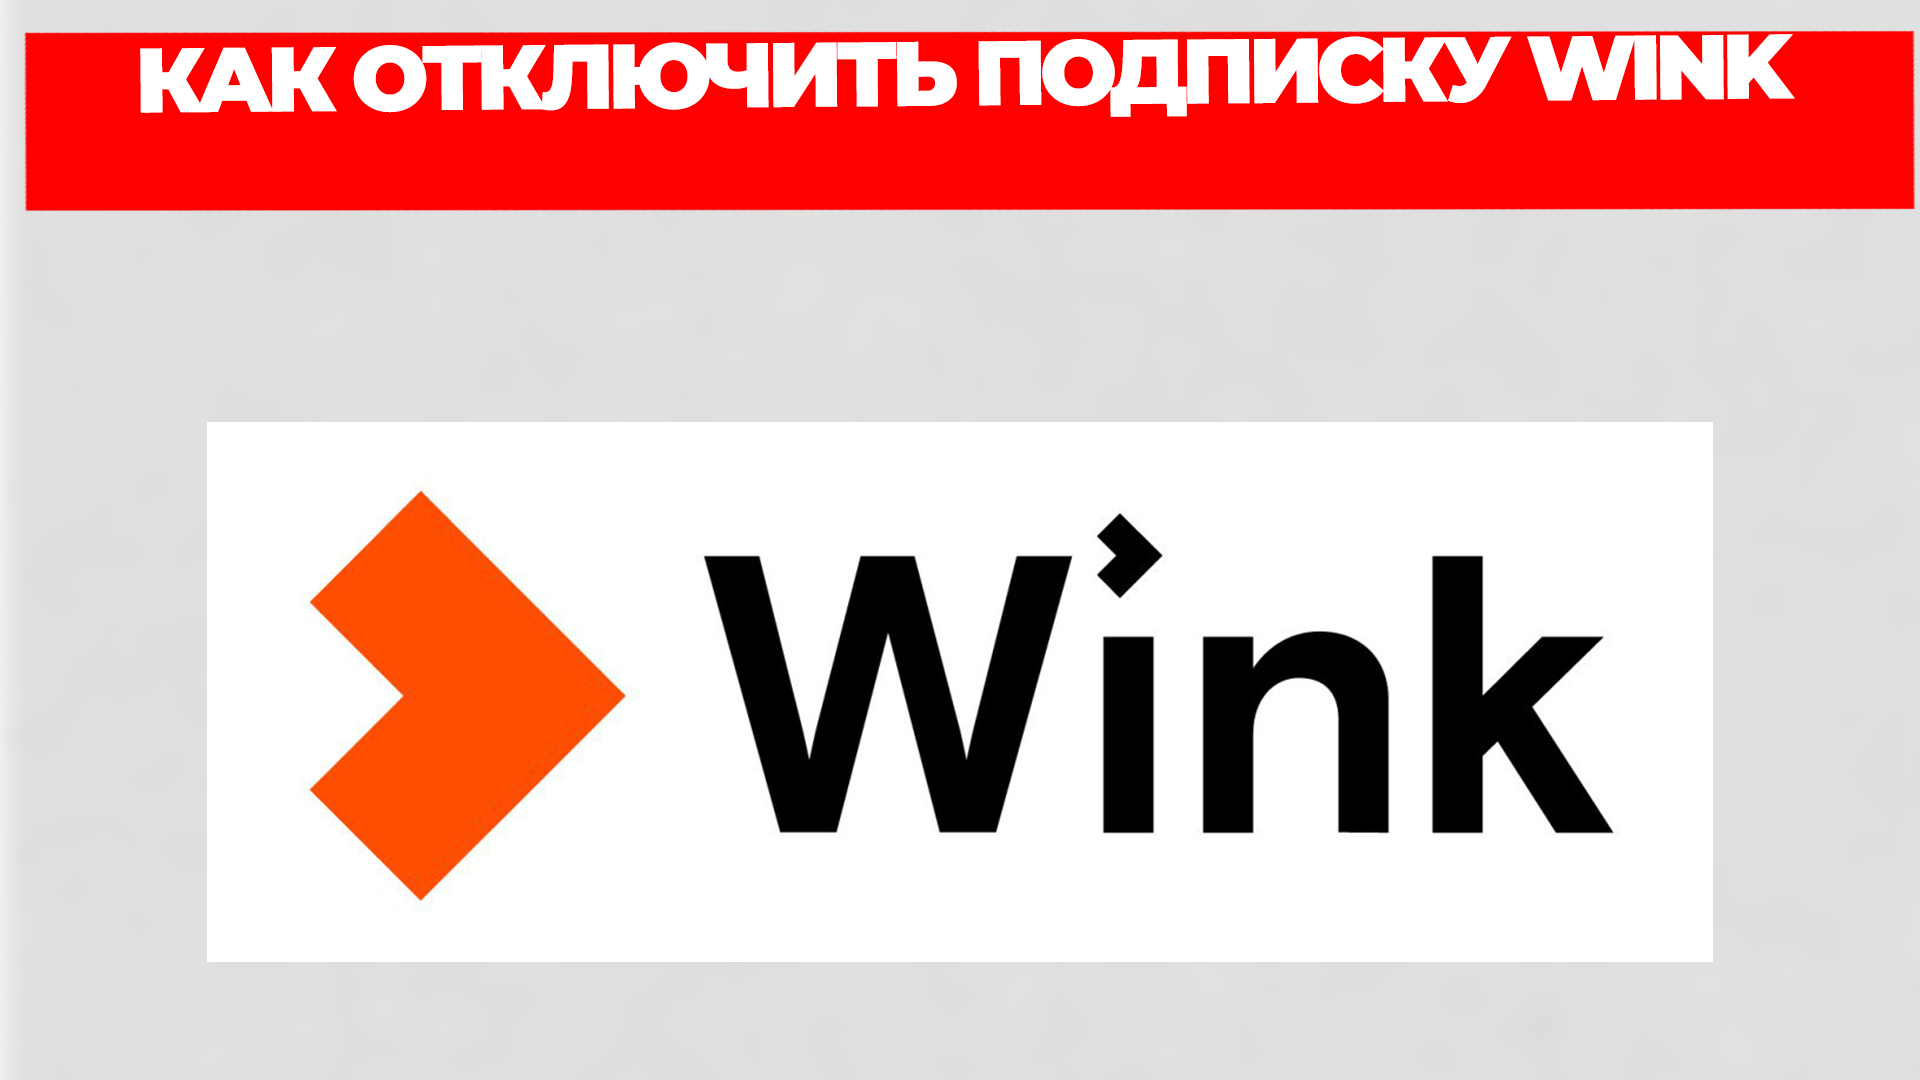 Убрать wink. Как отключить подписку wink. Wink реклама. Wink отписаться от подписки как отключить подписку. Как отключить подписку wink на телефоне.